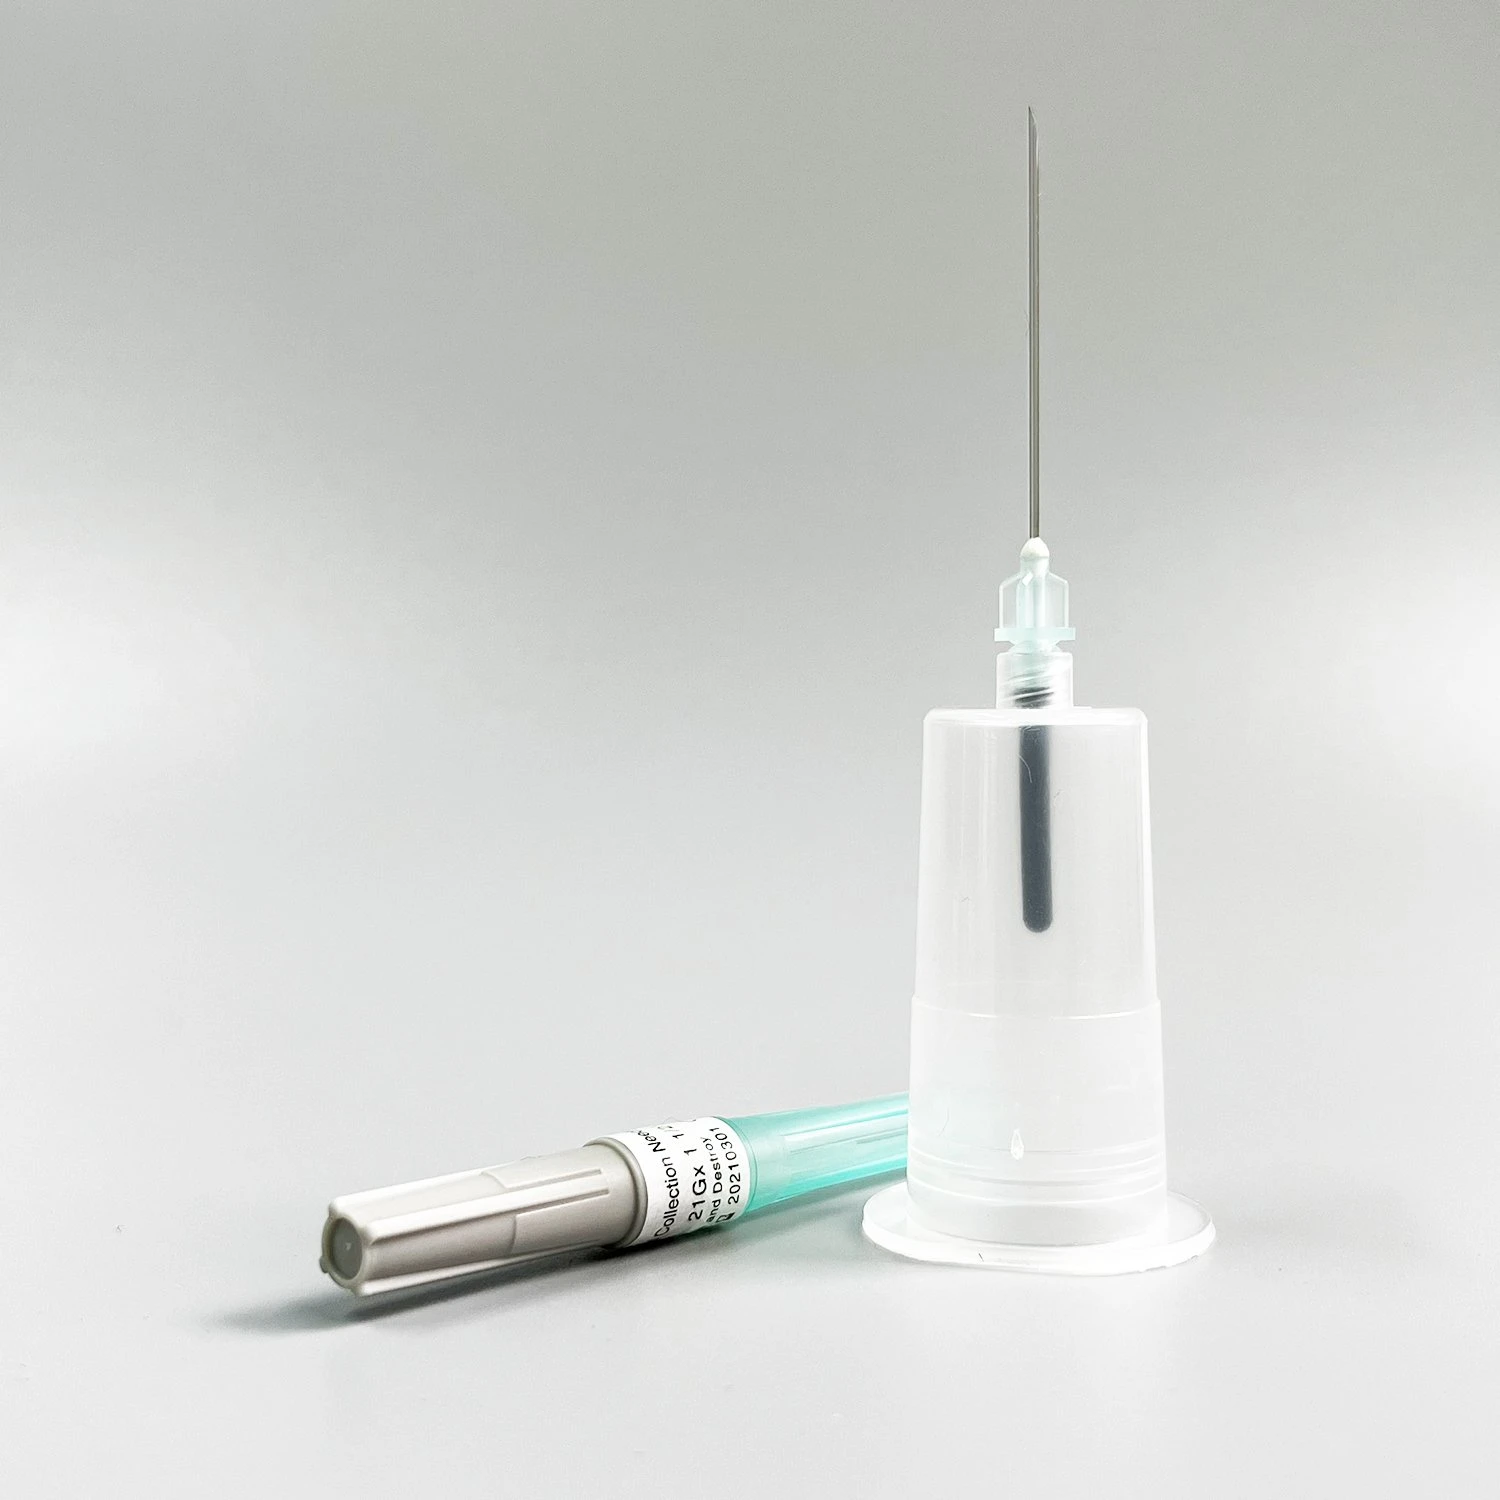 Стерильная игла для взятия проб крови с несколькими образцами типа ручки